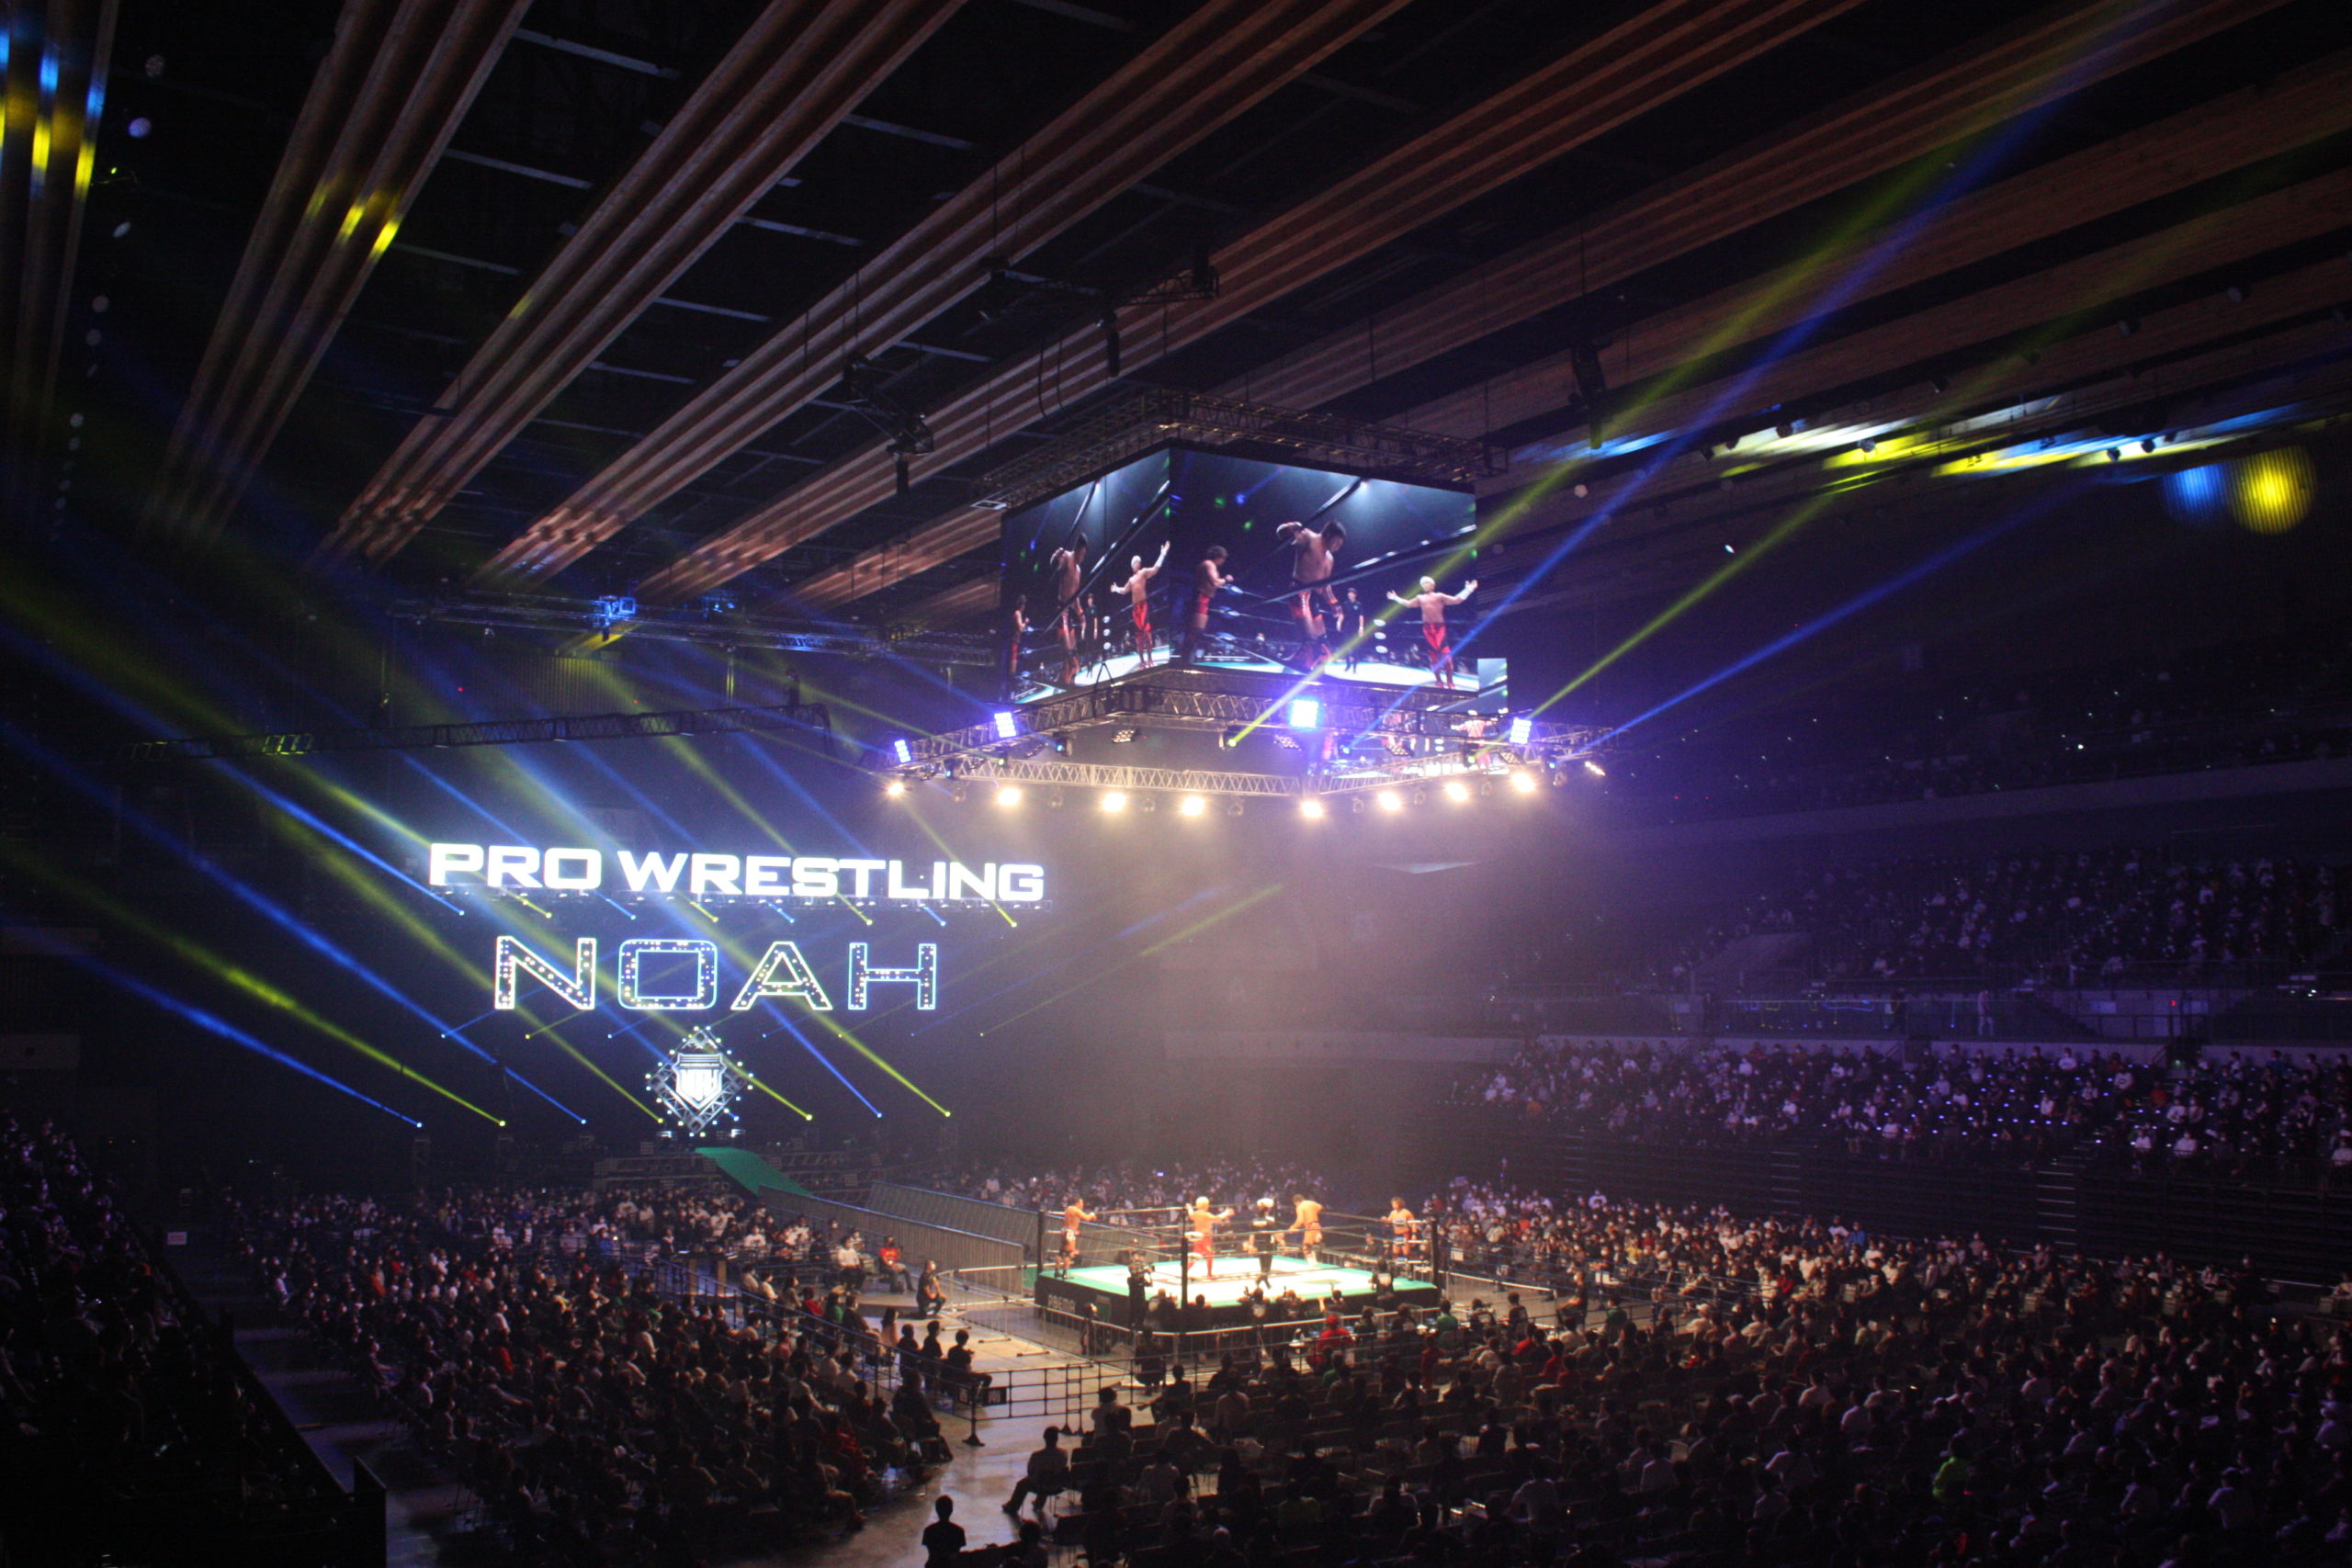 Pro-Wrestling-NOAR-Full-house-at-Ariake-Arena-TOKYO-scaled.jpg